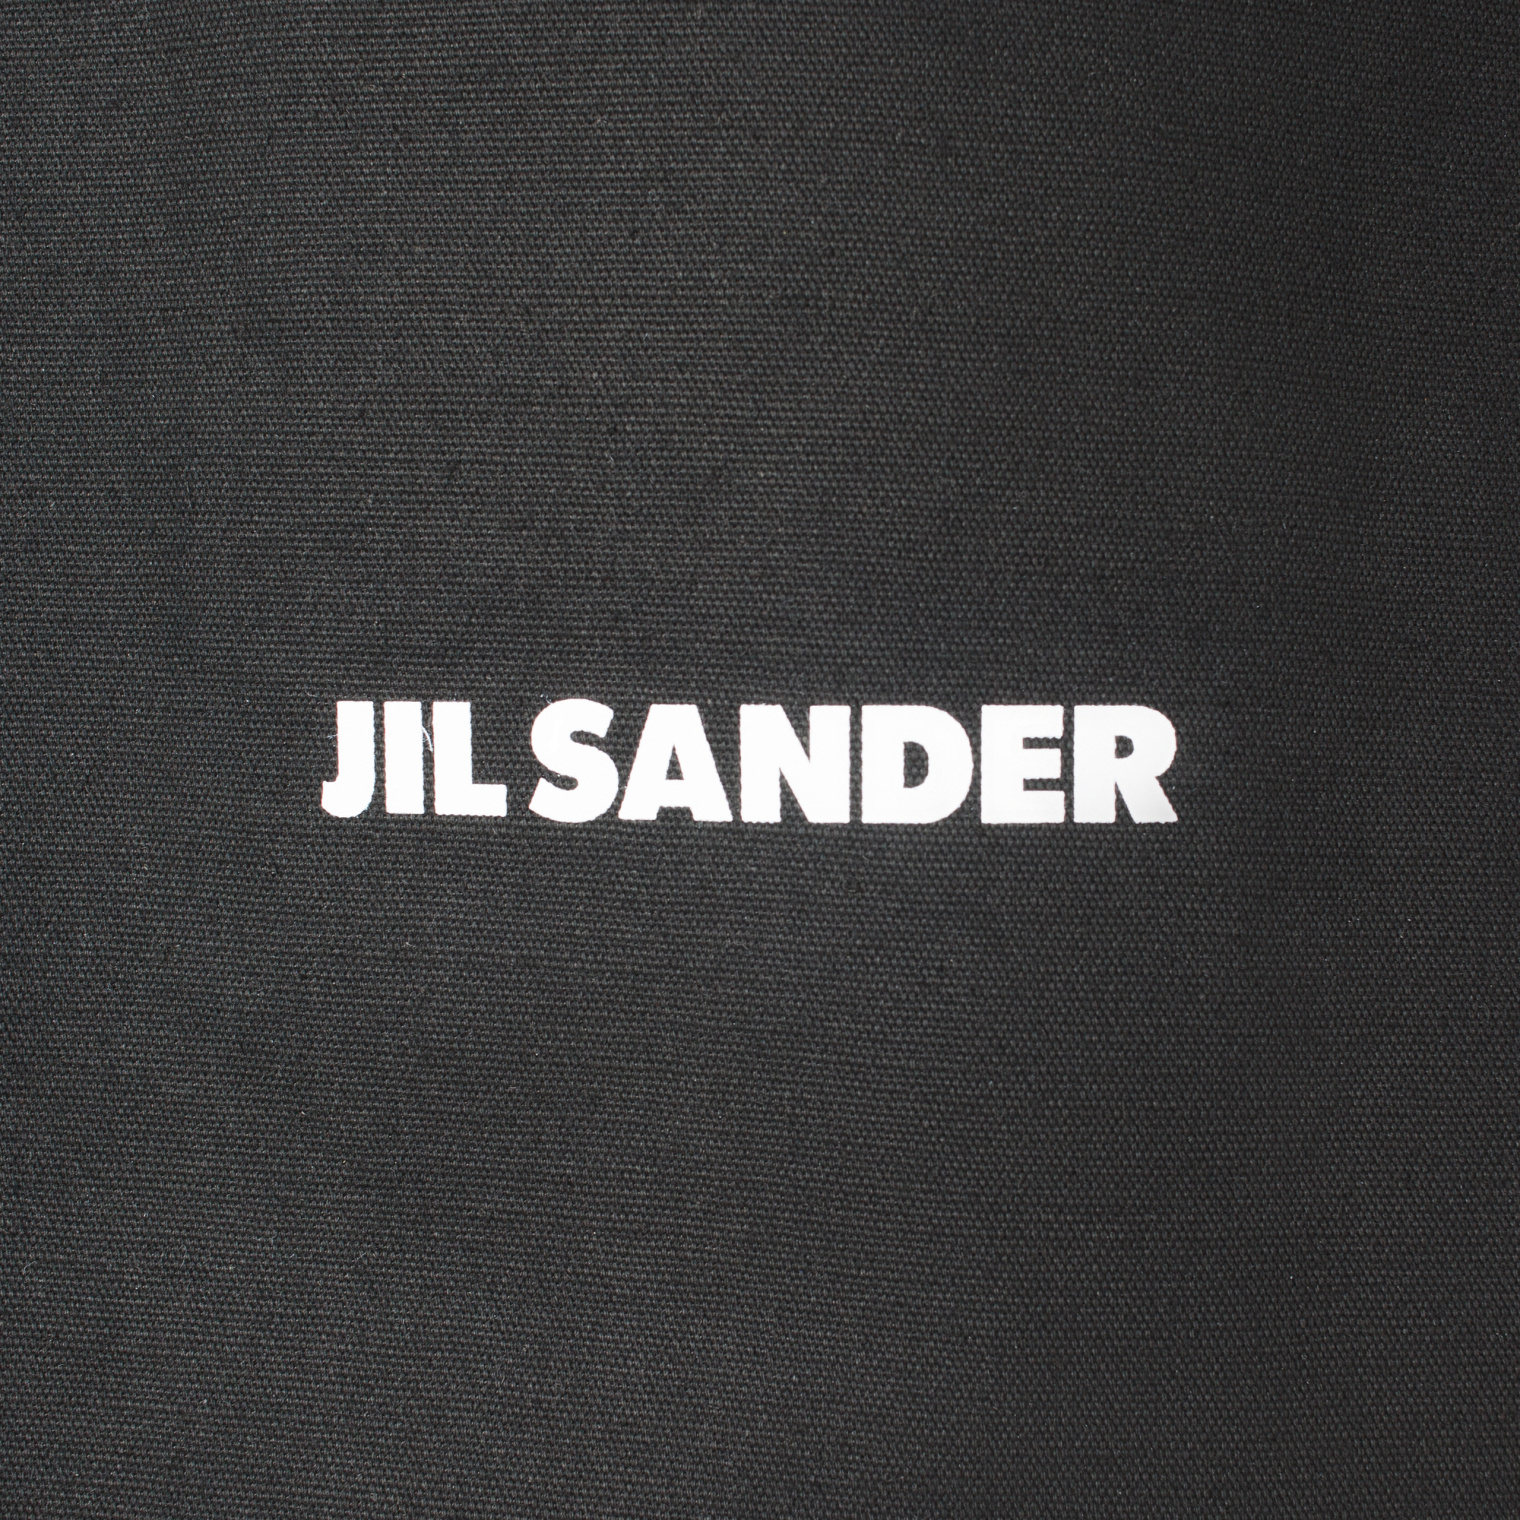 Jil Sander Logo print shopper bag